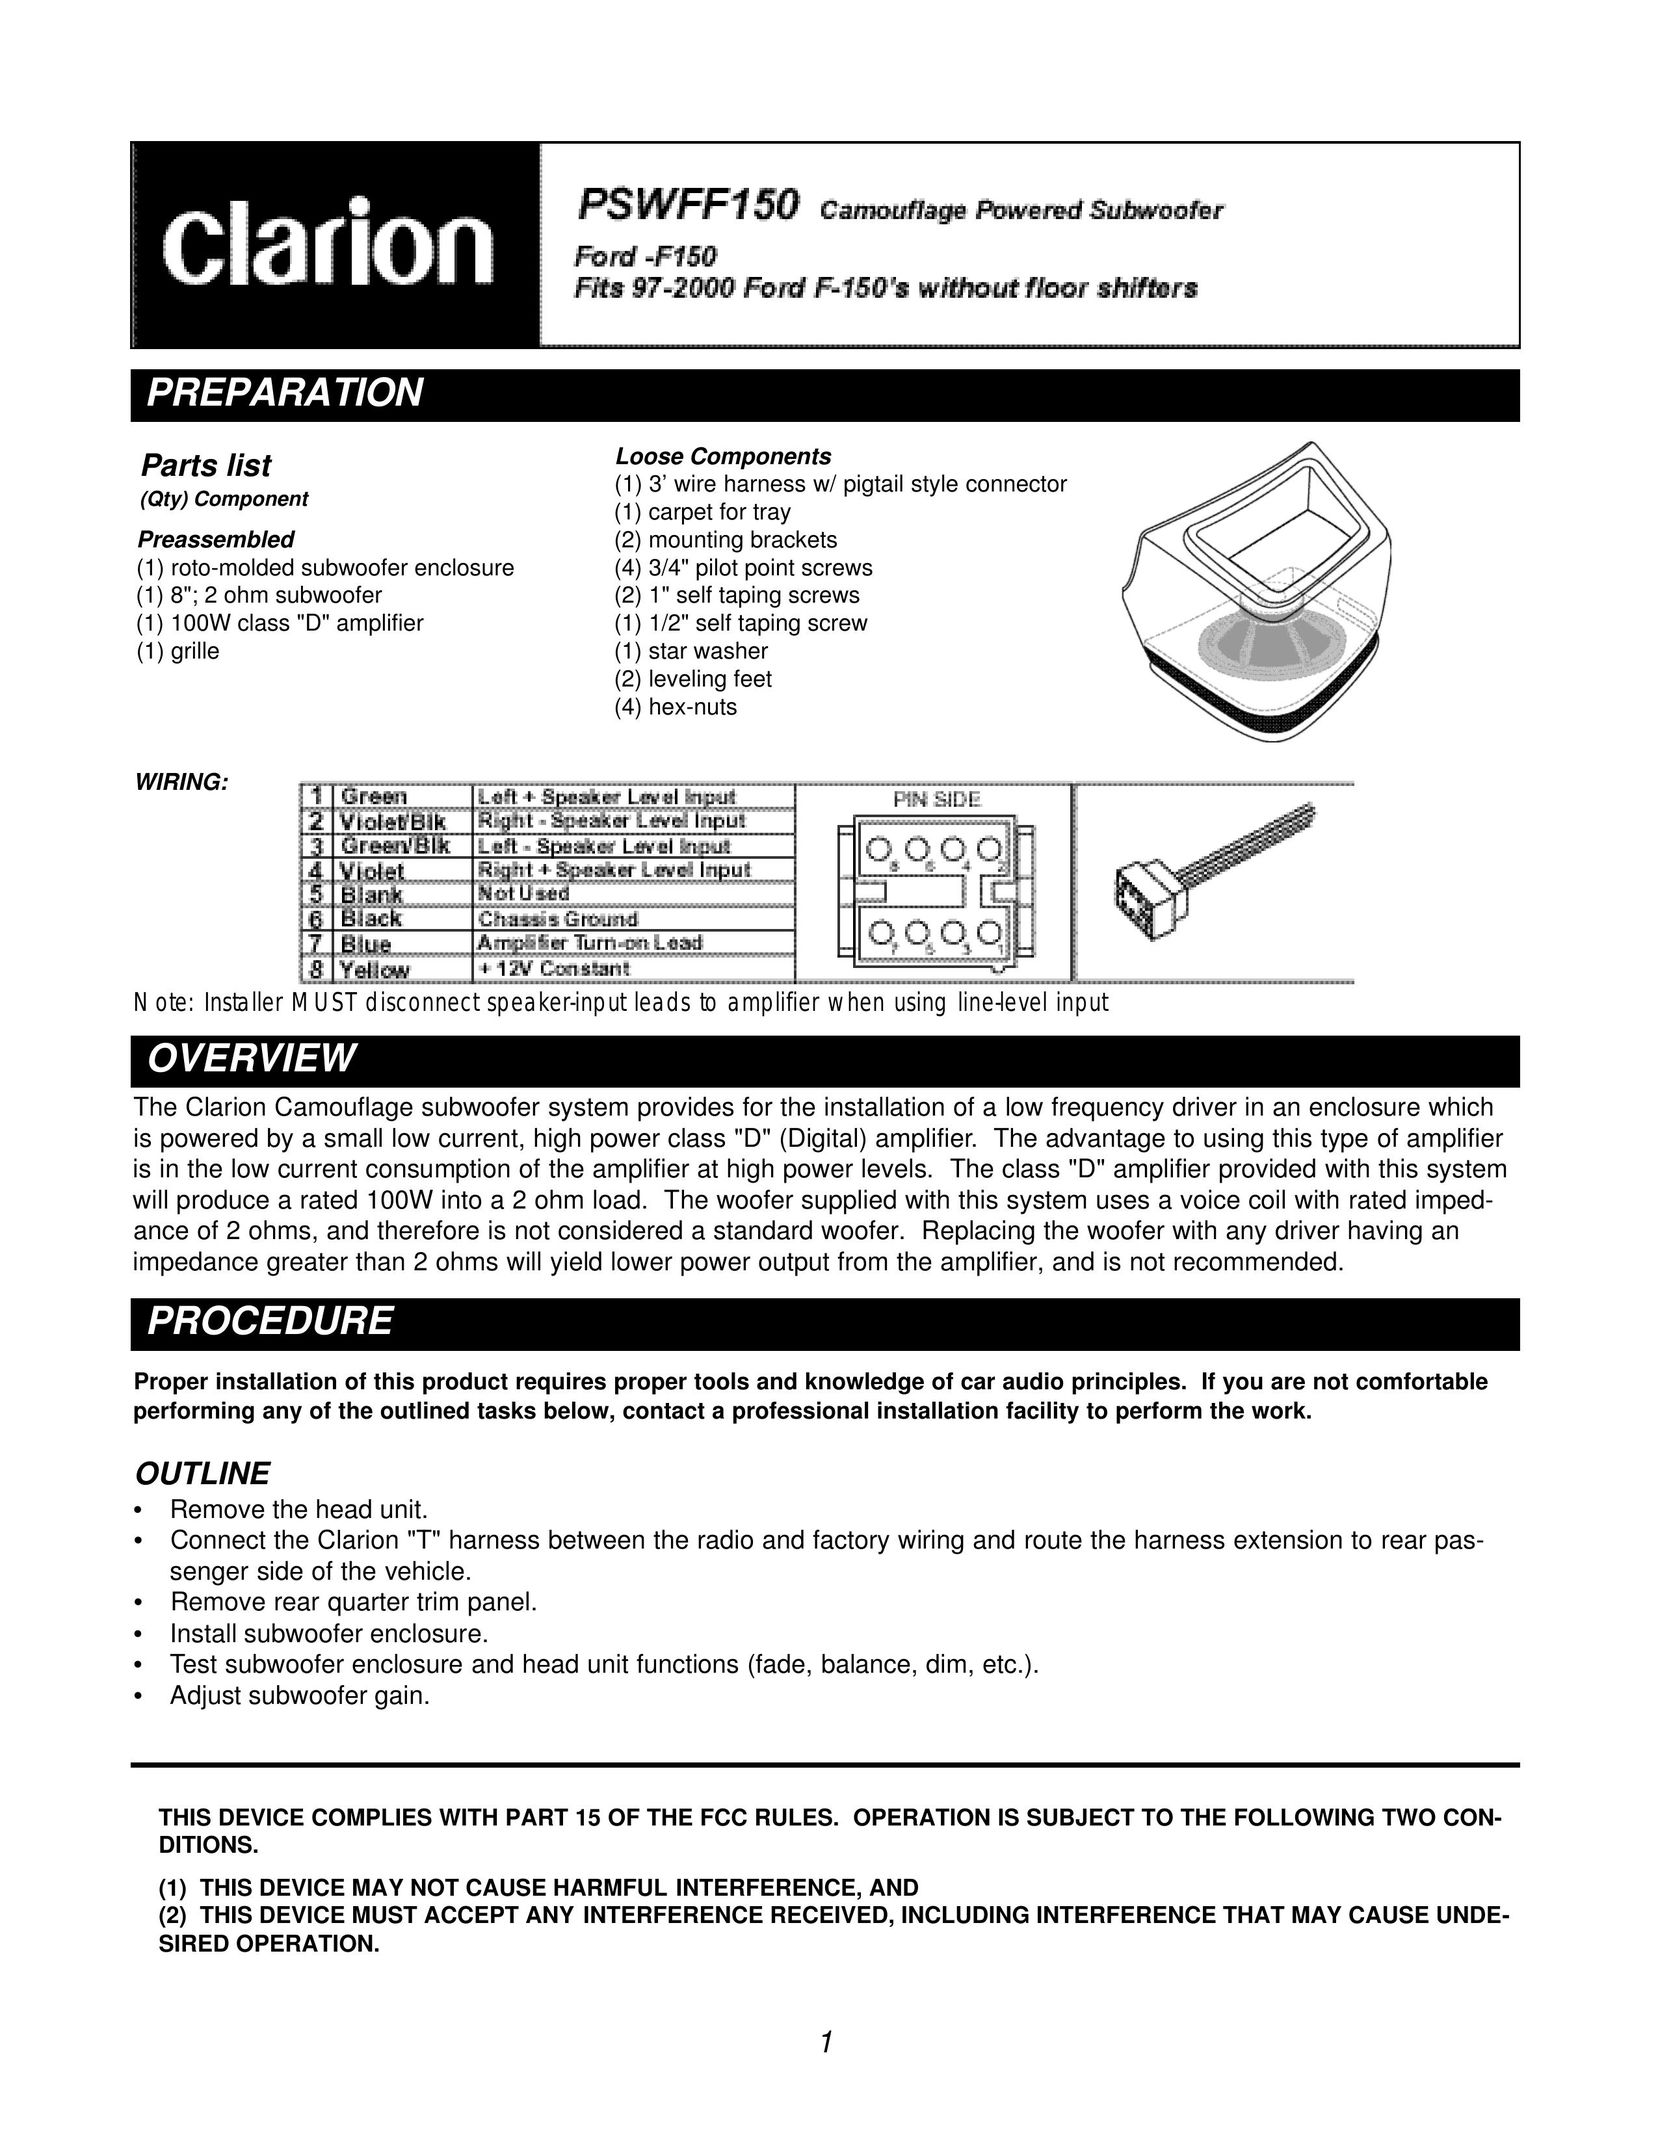 Clarion PSWFF150 Speaker User Manual